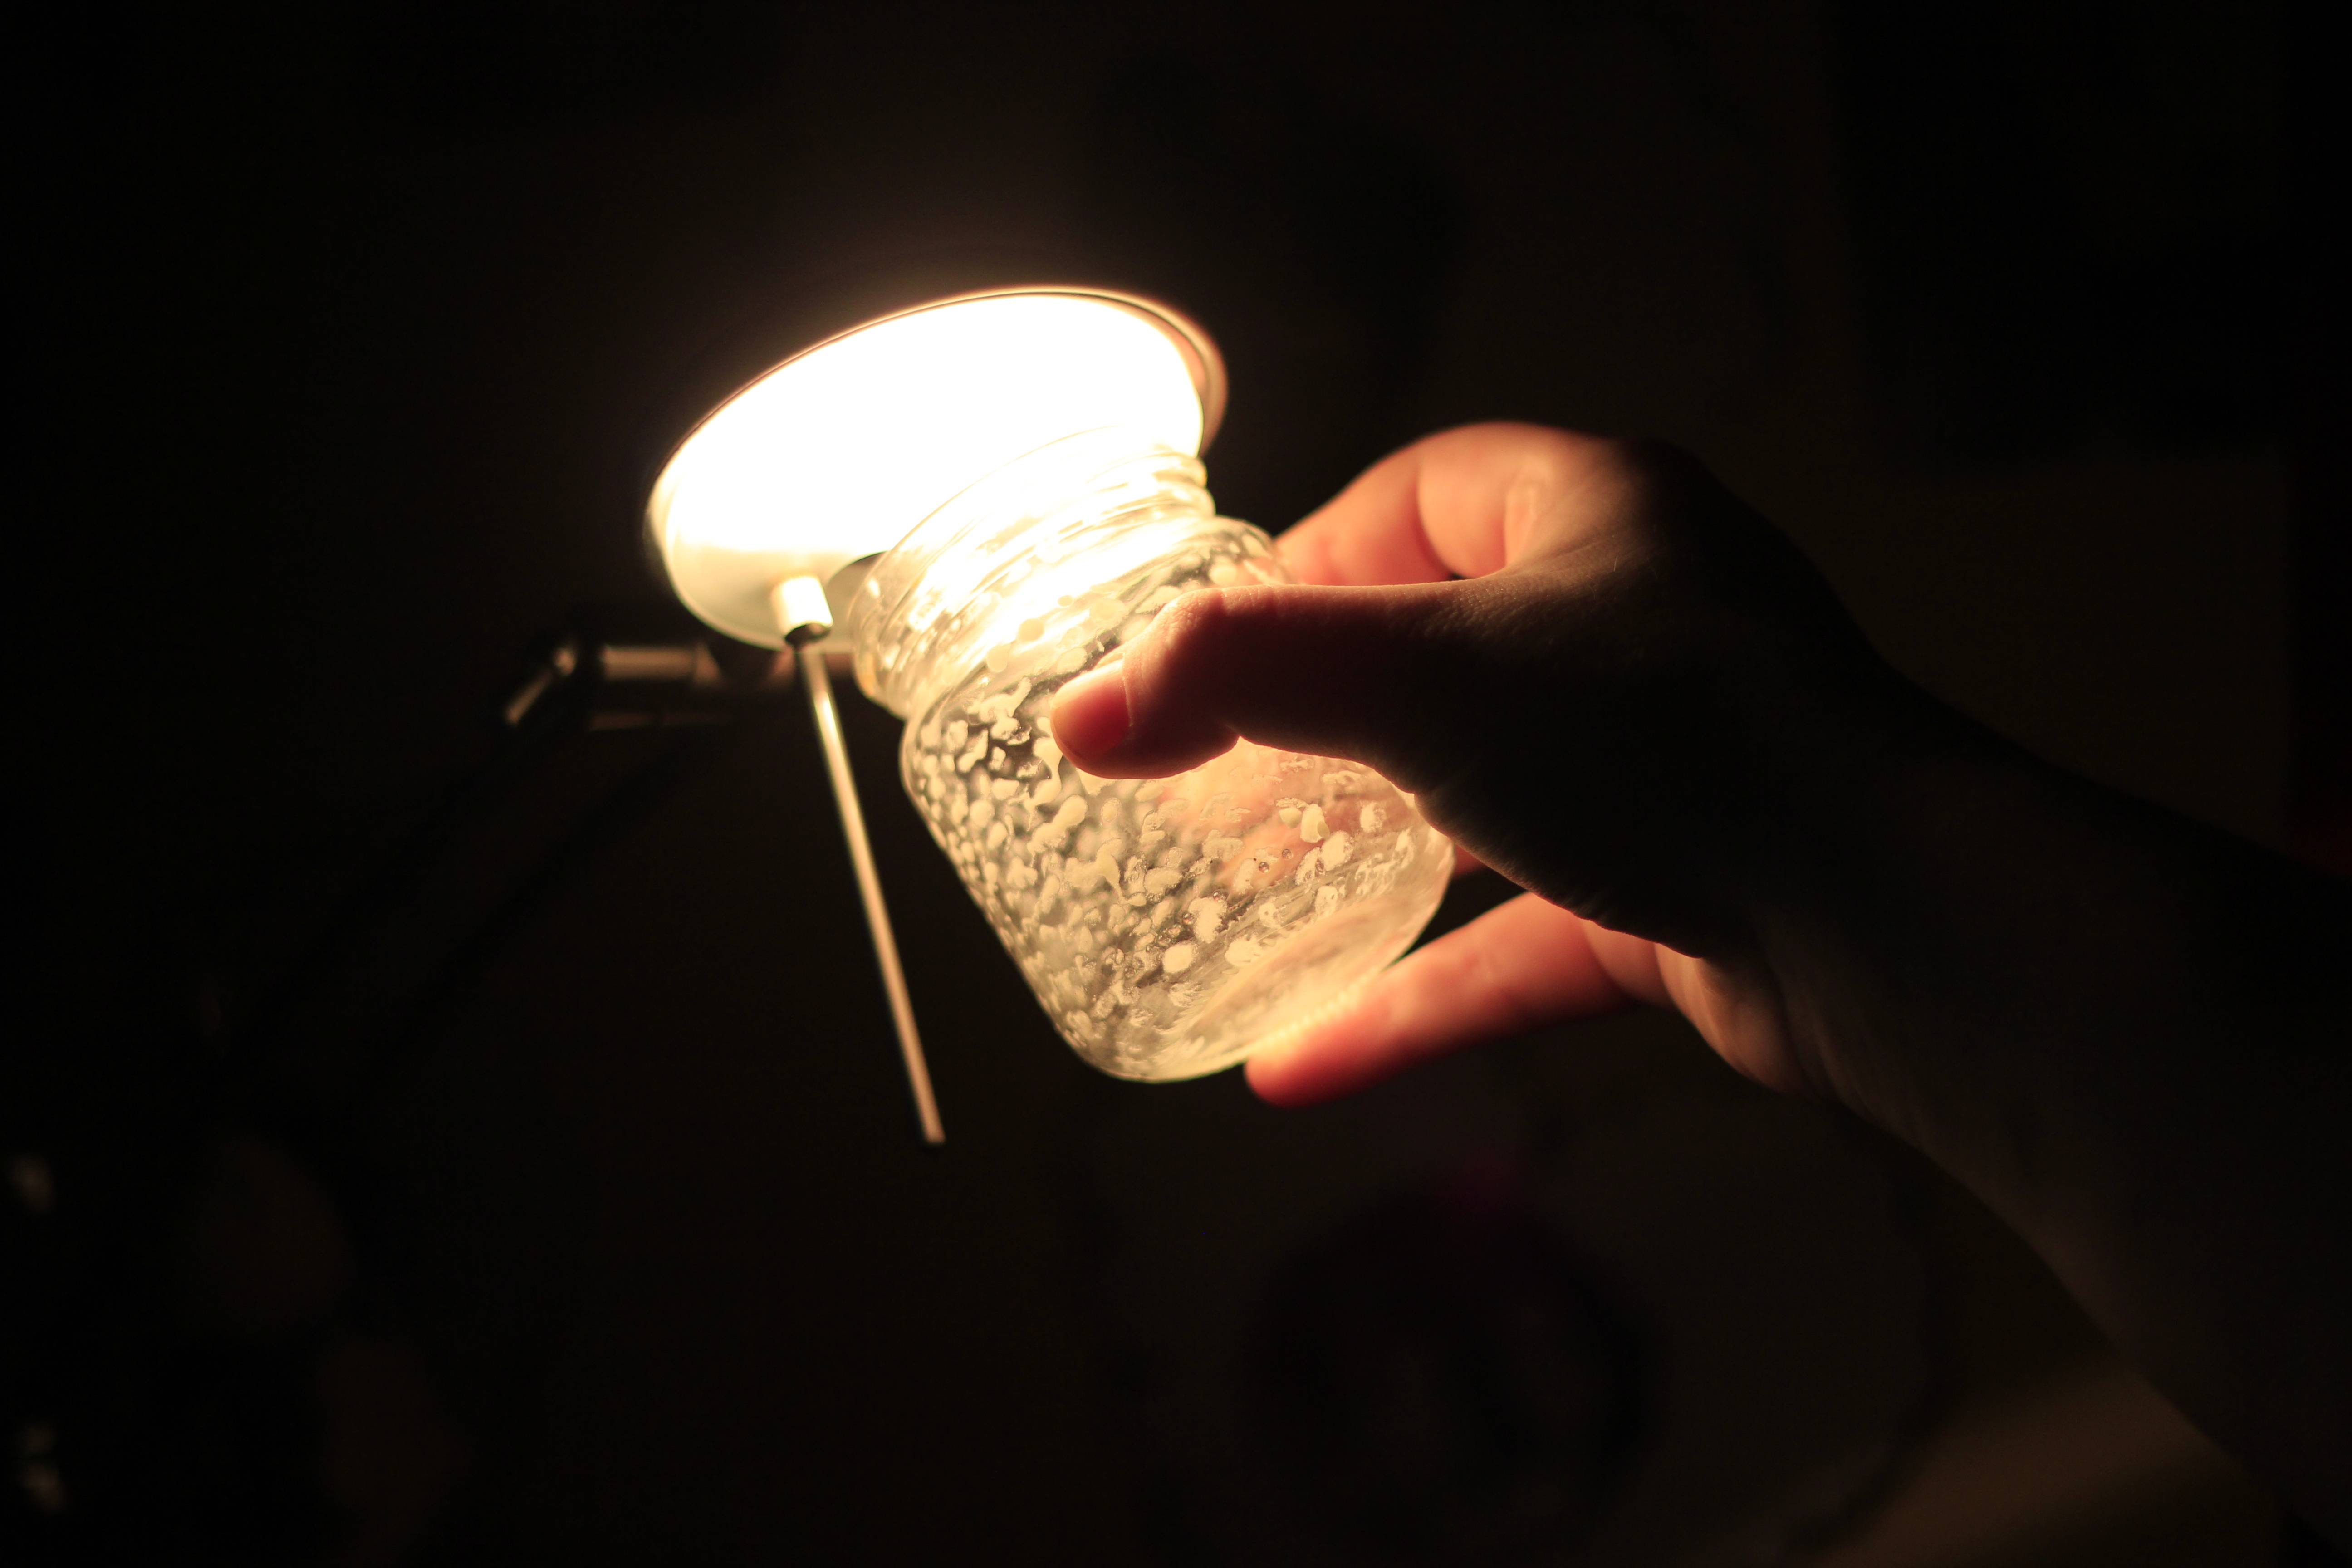 Уникальные дизайнерские светильники из дерева, которые можно изготовить своими руками